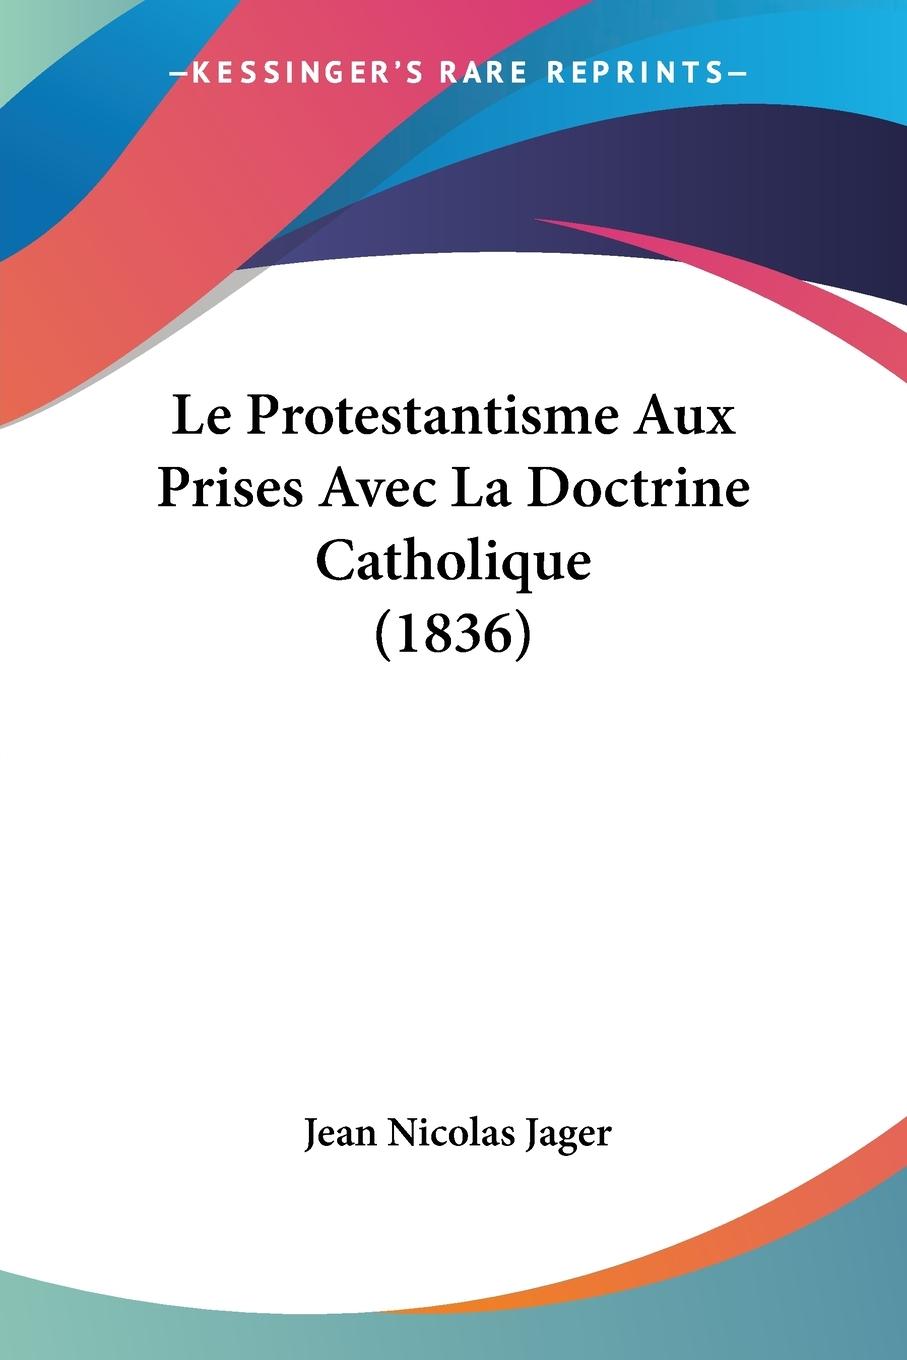 Le Protestantisme Aux Prises Avec La Doctrine Catholique (1836) - Jager, Jean Nicolas